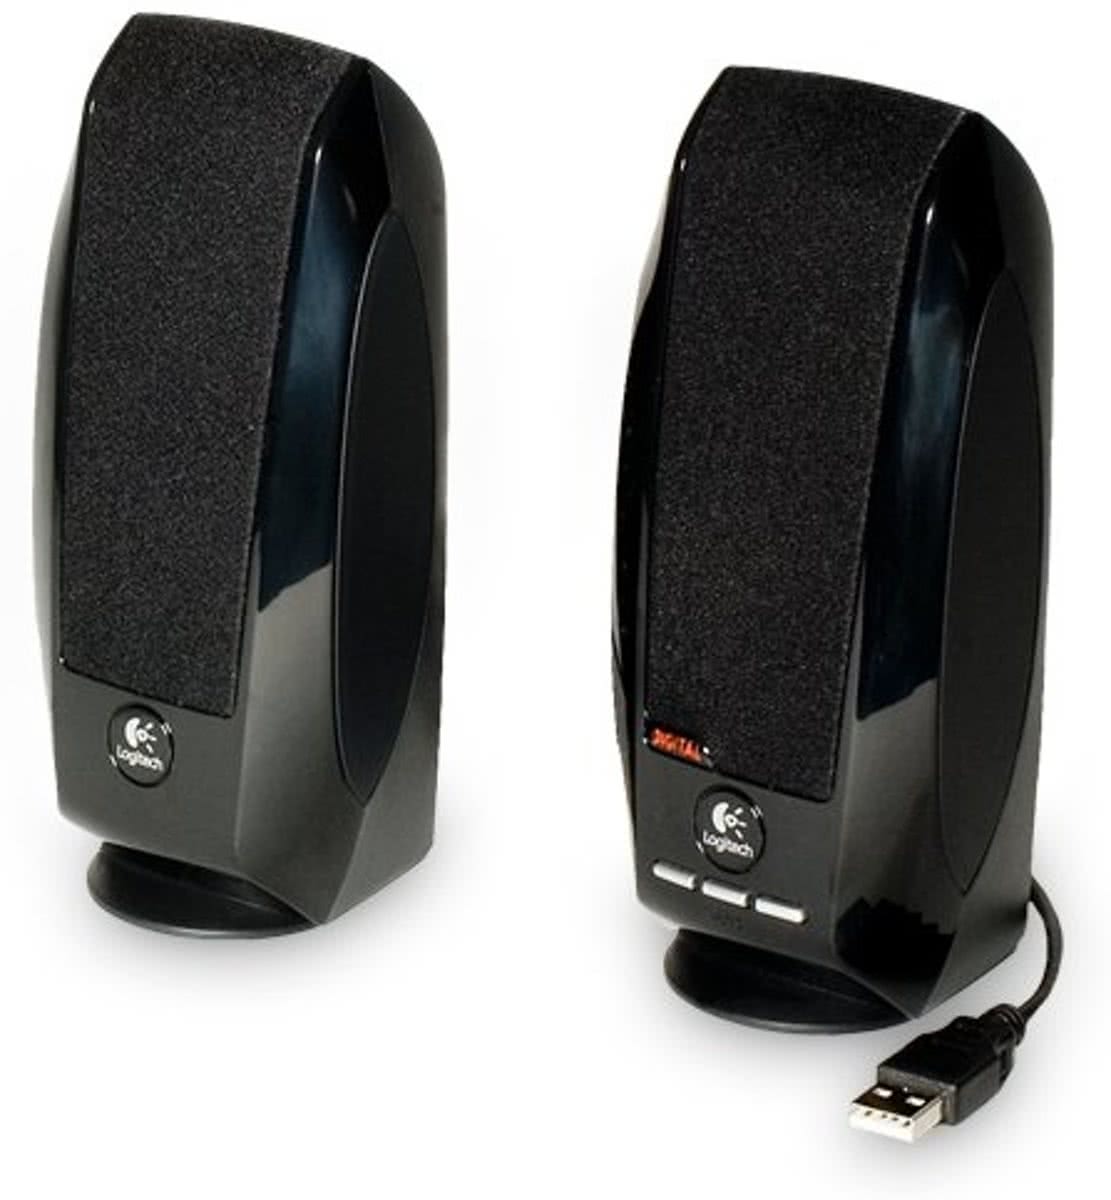   S150 - Speakerset